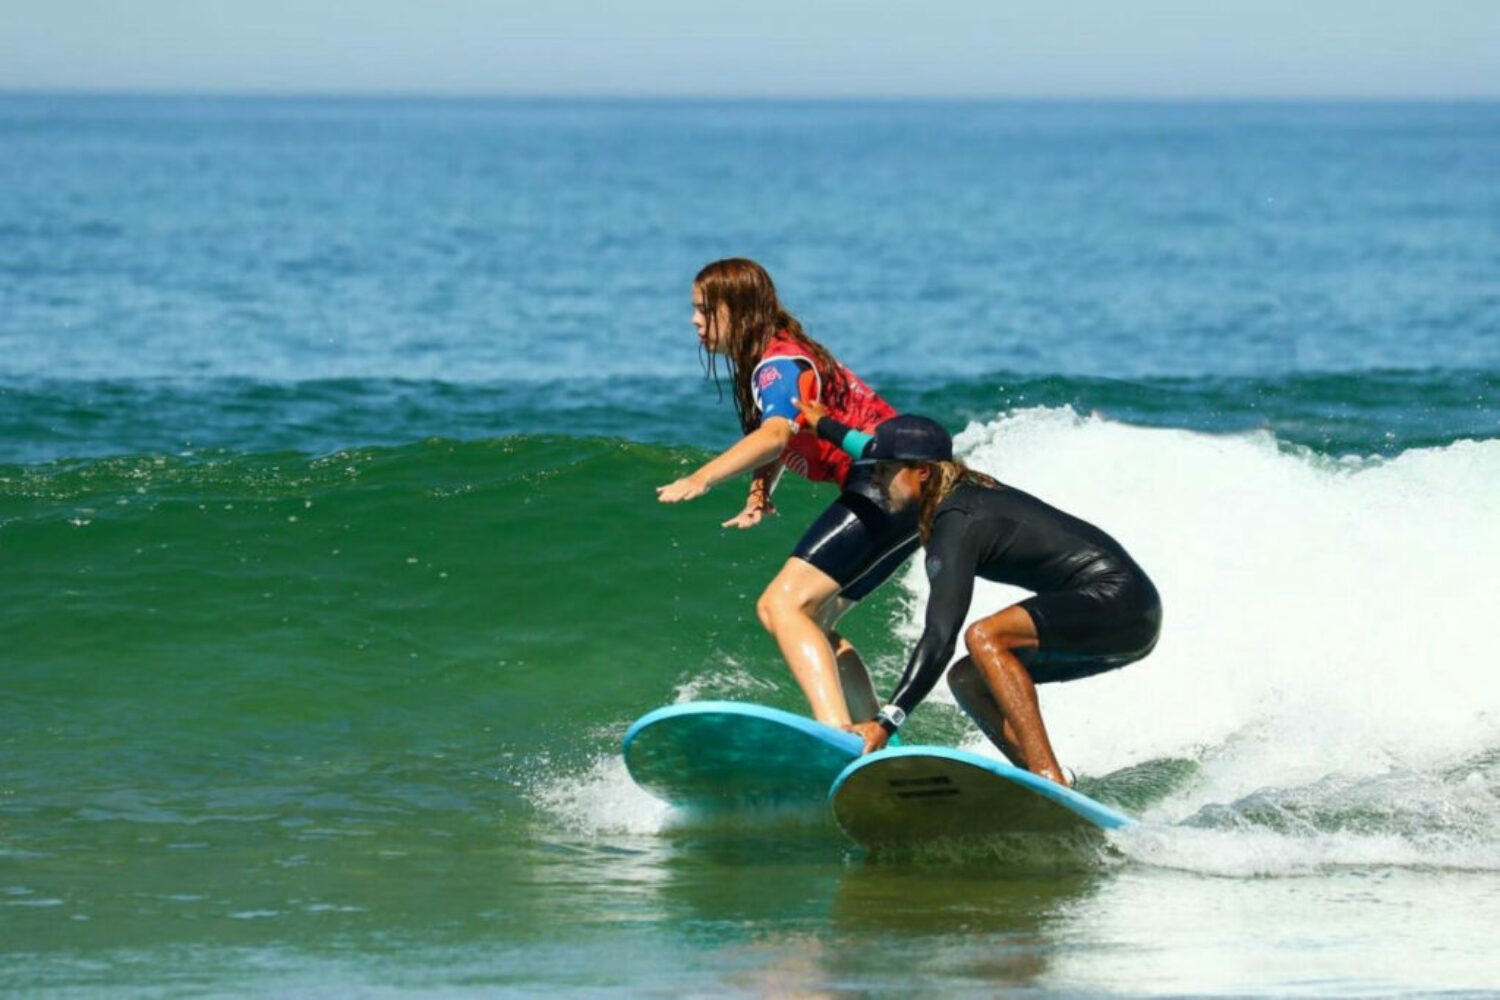 Envie de progresser en surf, un cours particulier c’est l’idéal pour apprendre plus vite.